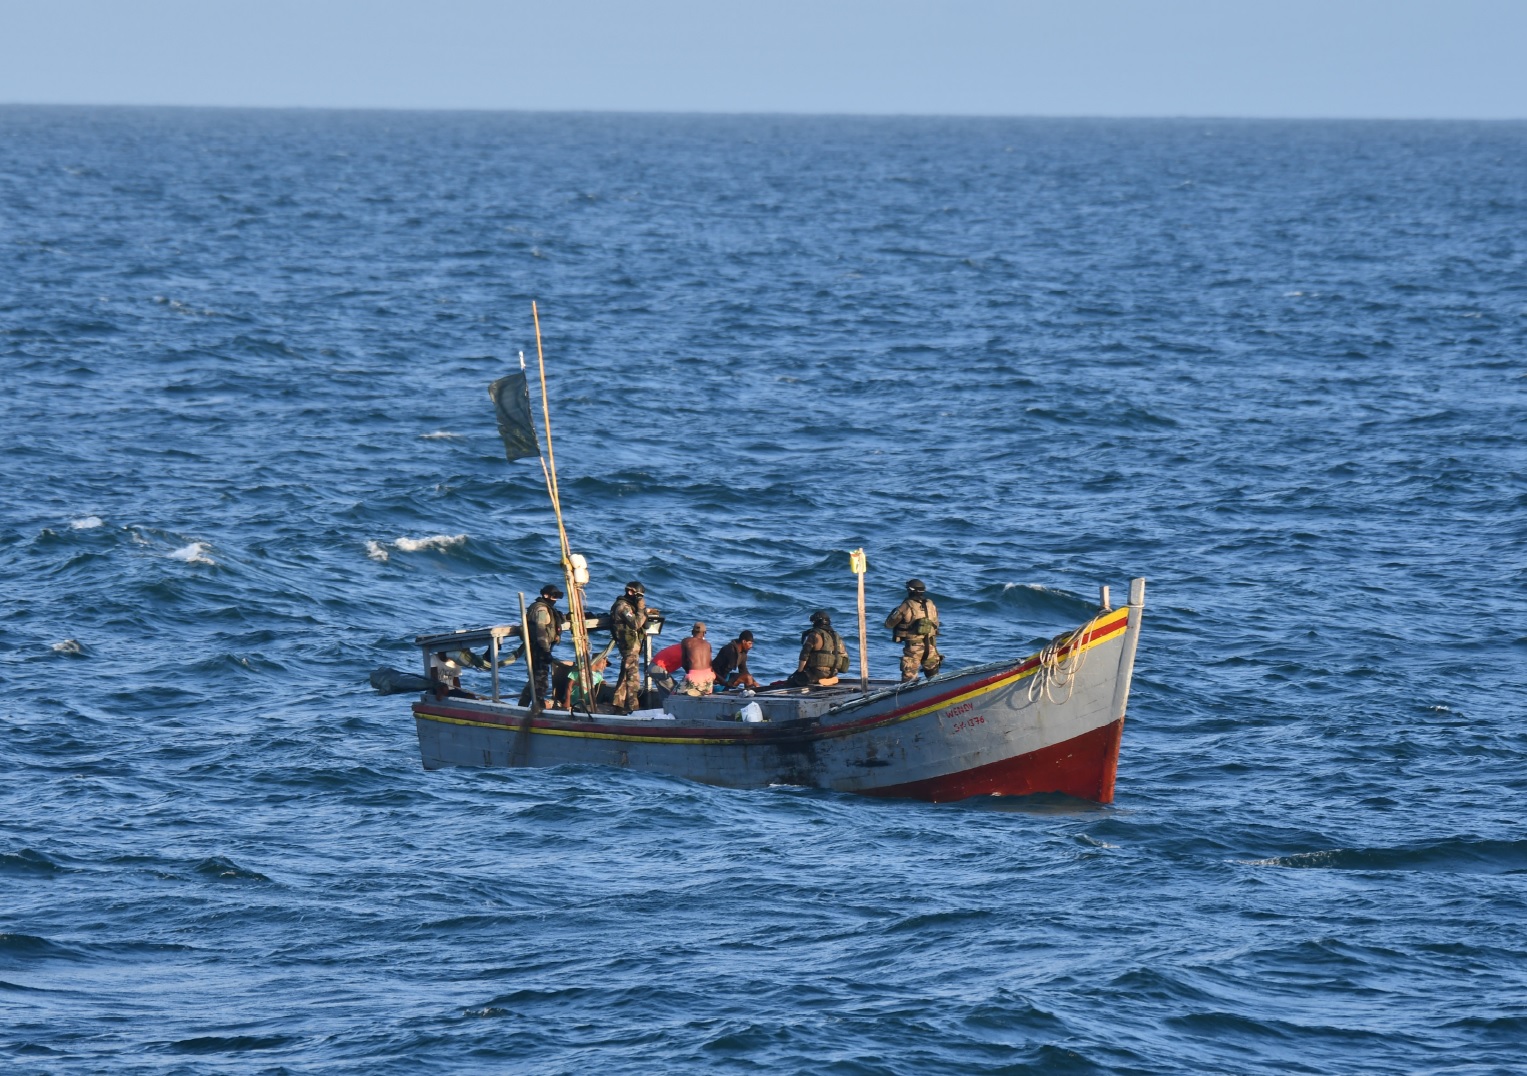  Les forces armées en Guyane engagées dans la lutte contre la pêche illégale